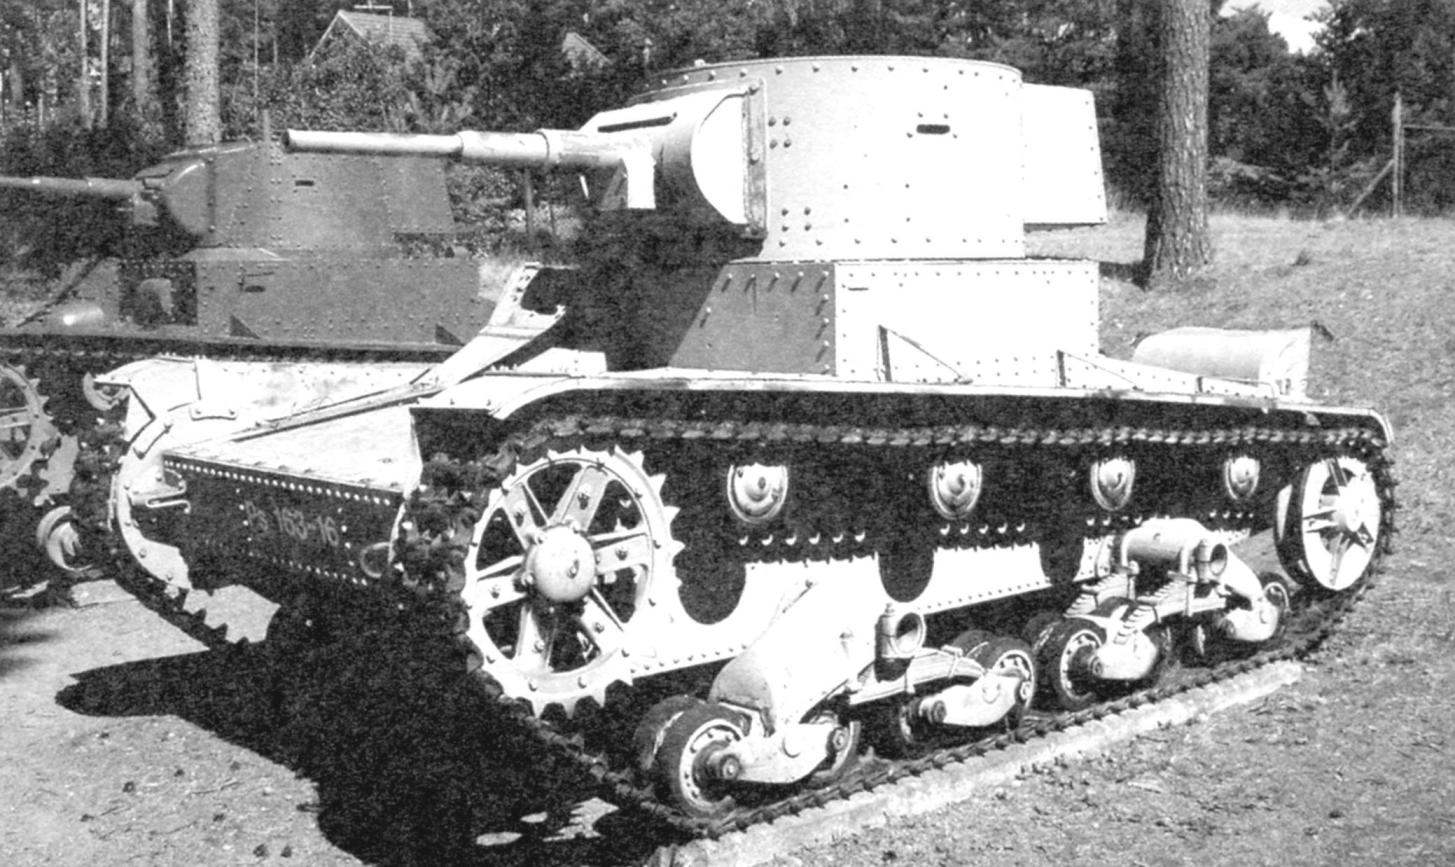 Танк Т-26 с клёпанными корпусом и башней. Вооружён 45-мм пушкой 20К и 7,62-мм пулемётом. Танковый музей, г. Парола, Финляндия